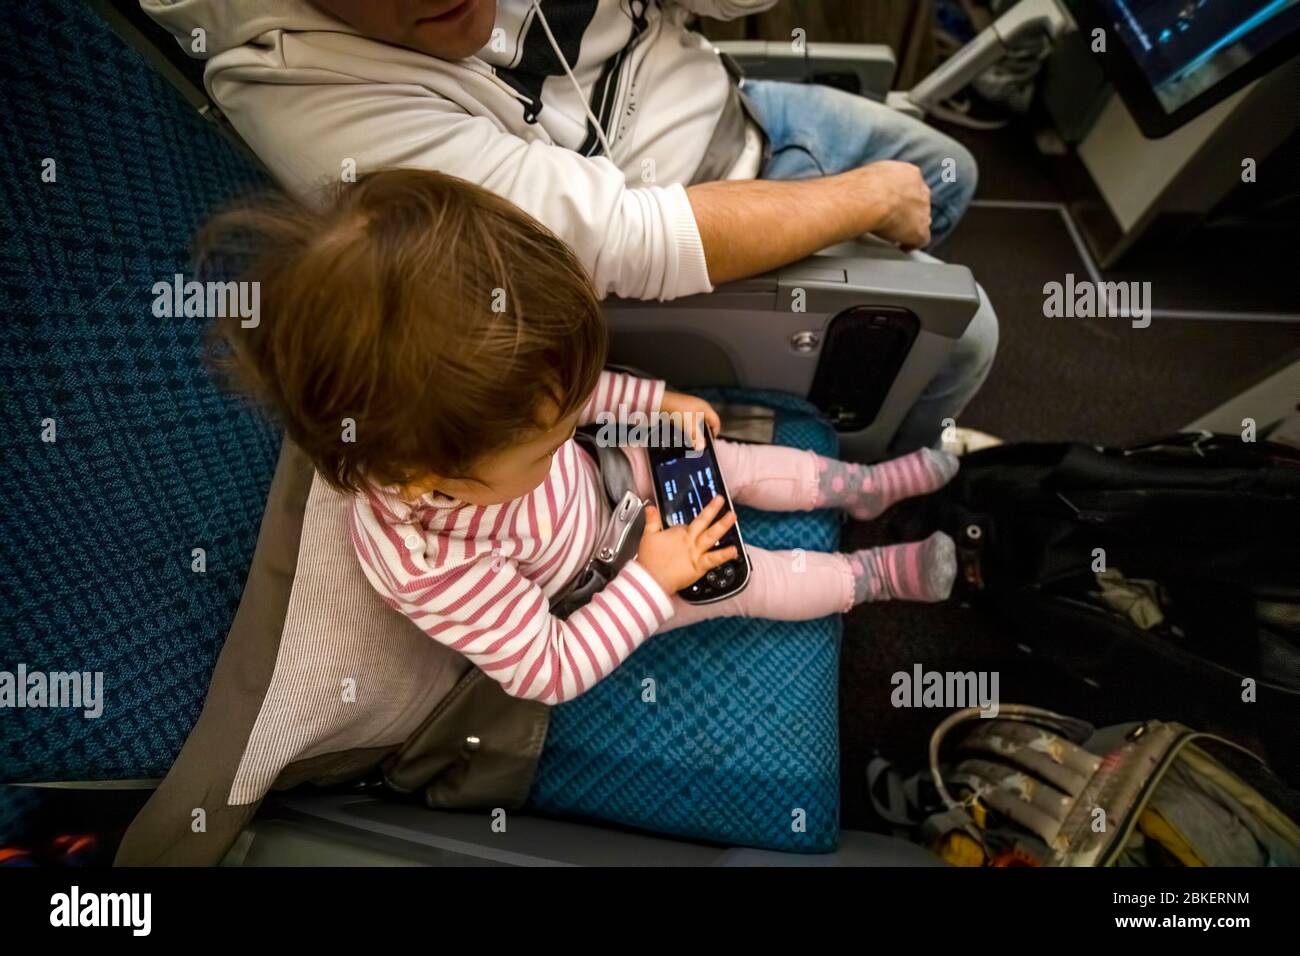 Unterhaltung an Bord des Flugzeugs. Baby sitzen im Flugzeug in den Sitz und spielen Spaß in der Multimedia-System Fernbedienung. Stockfoto